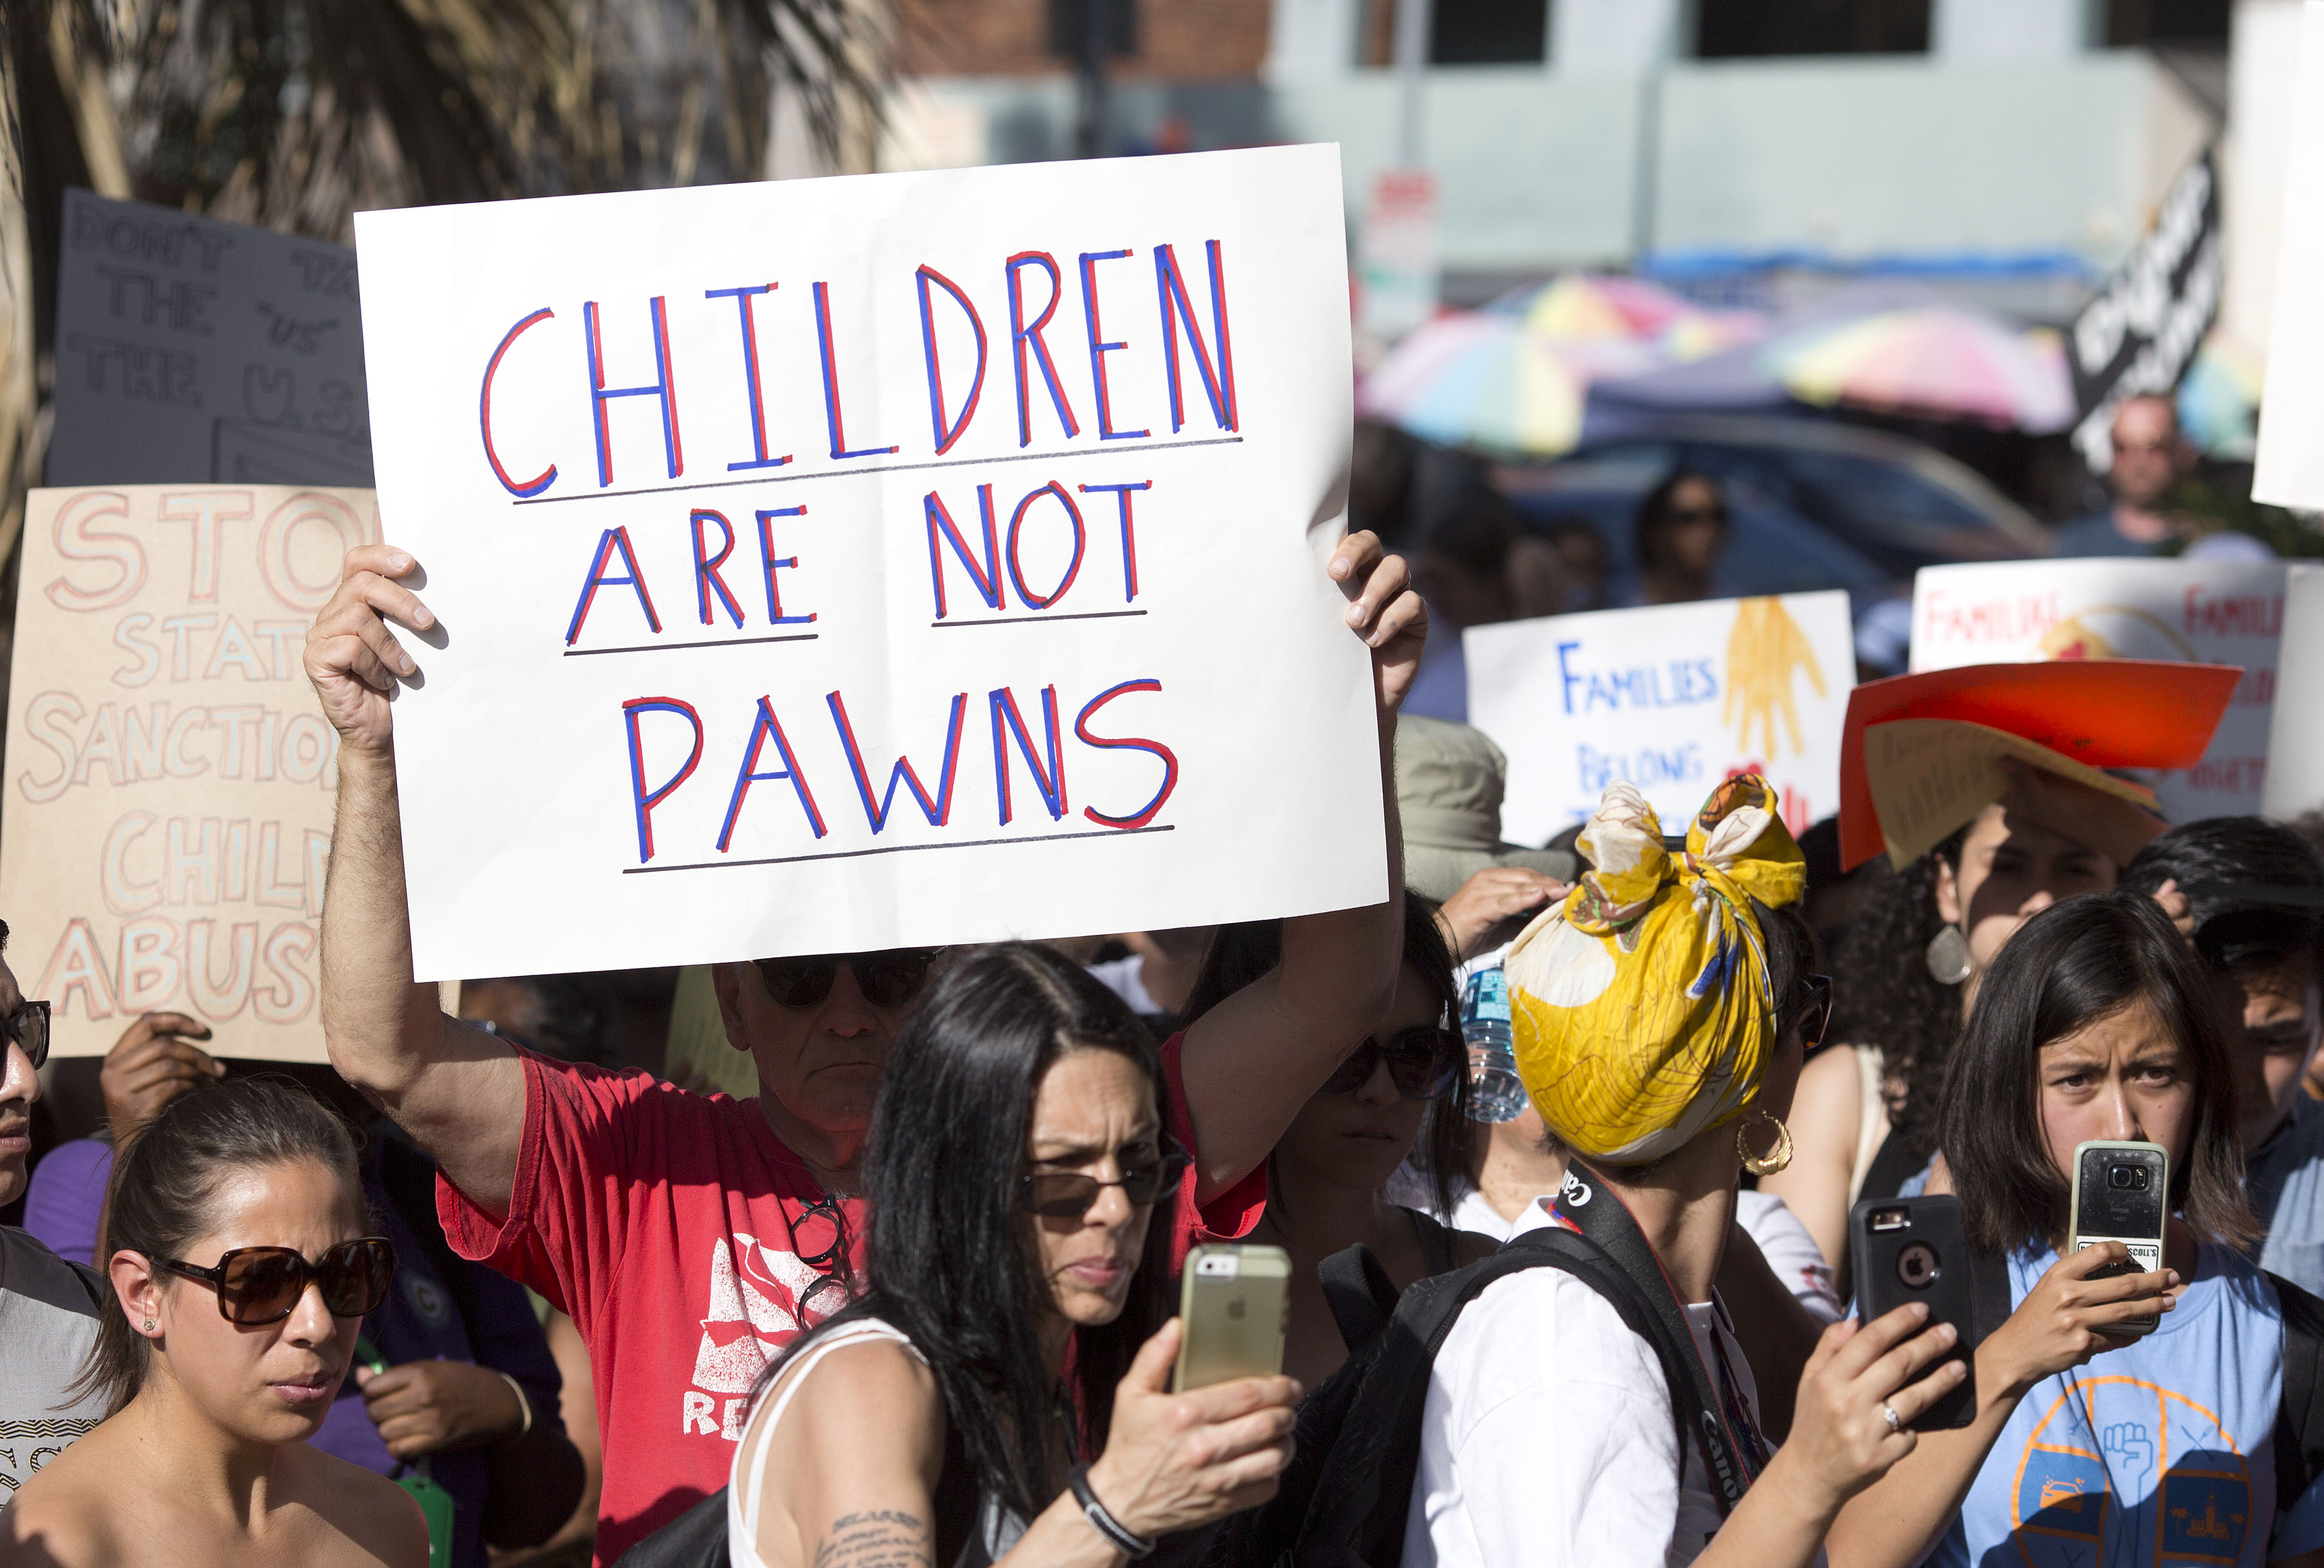  Unicef denuncia a Estados Unidos por separar a hijos de padres inmigrantes